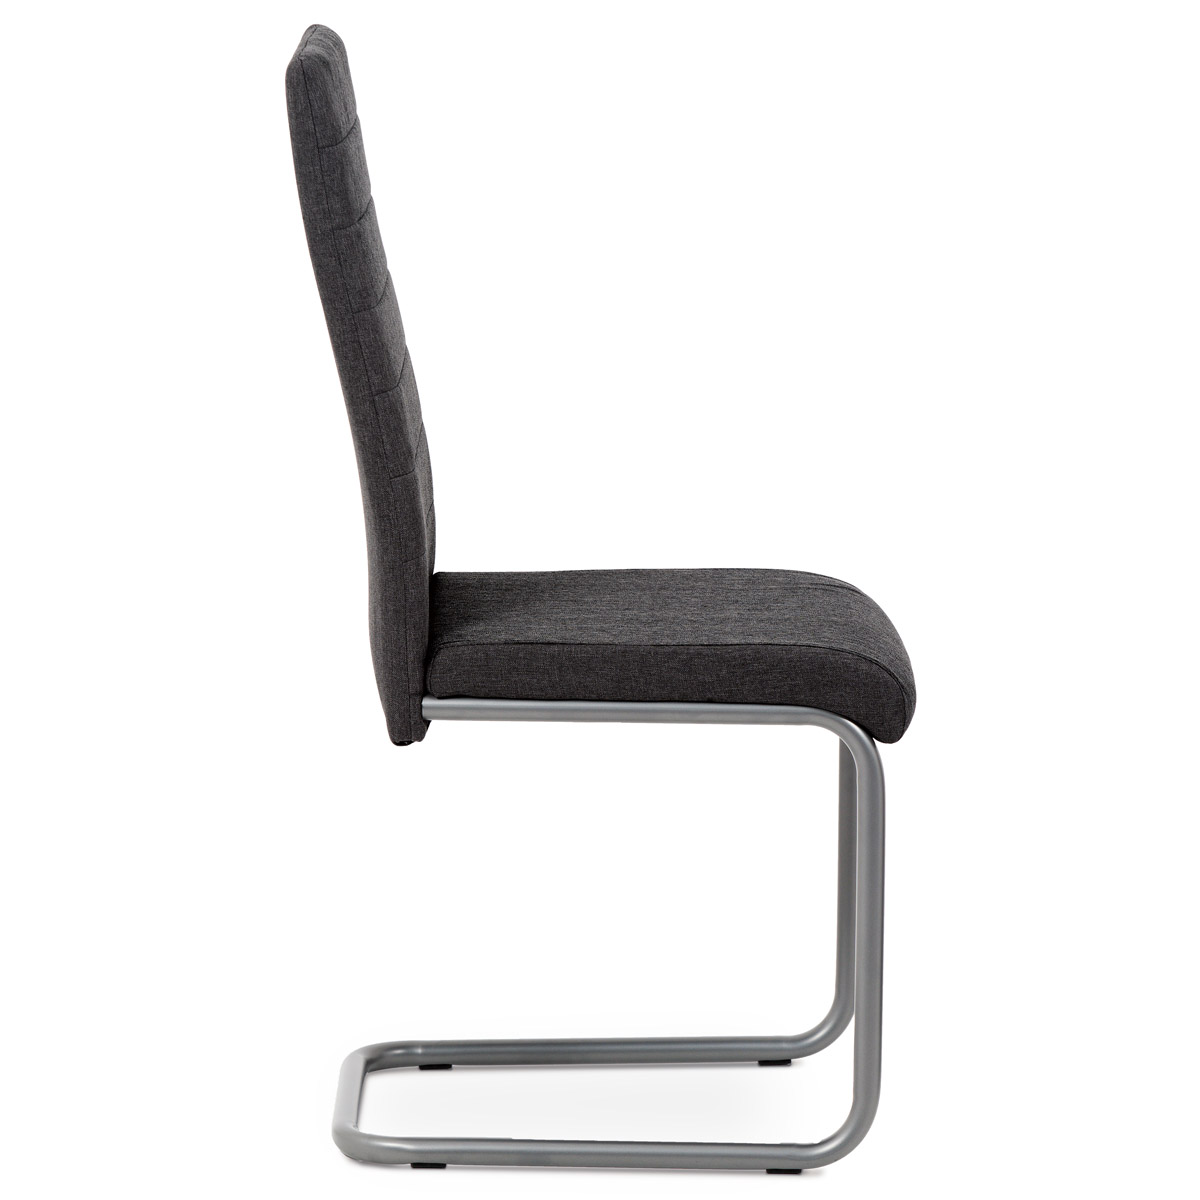 Jídelní židle, šedá látka, kov matný antracit